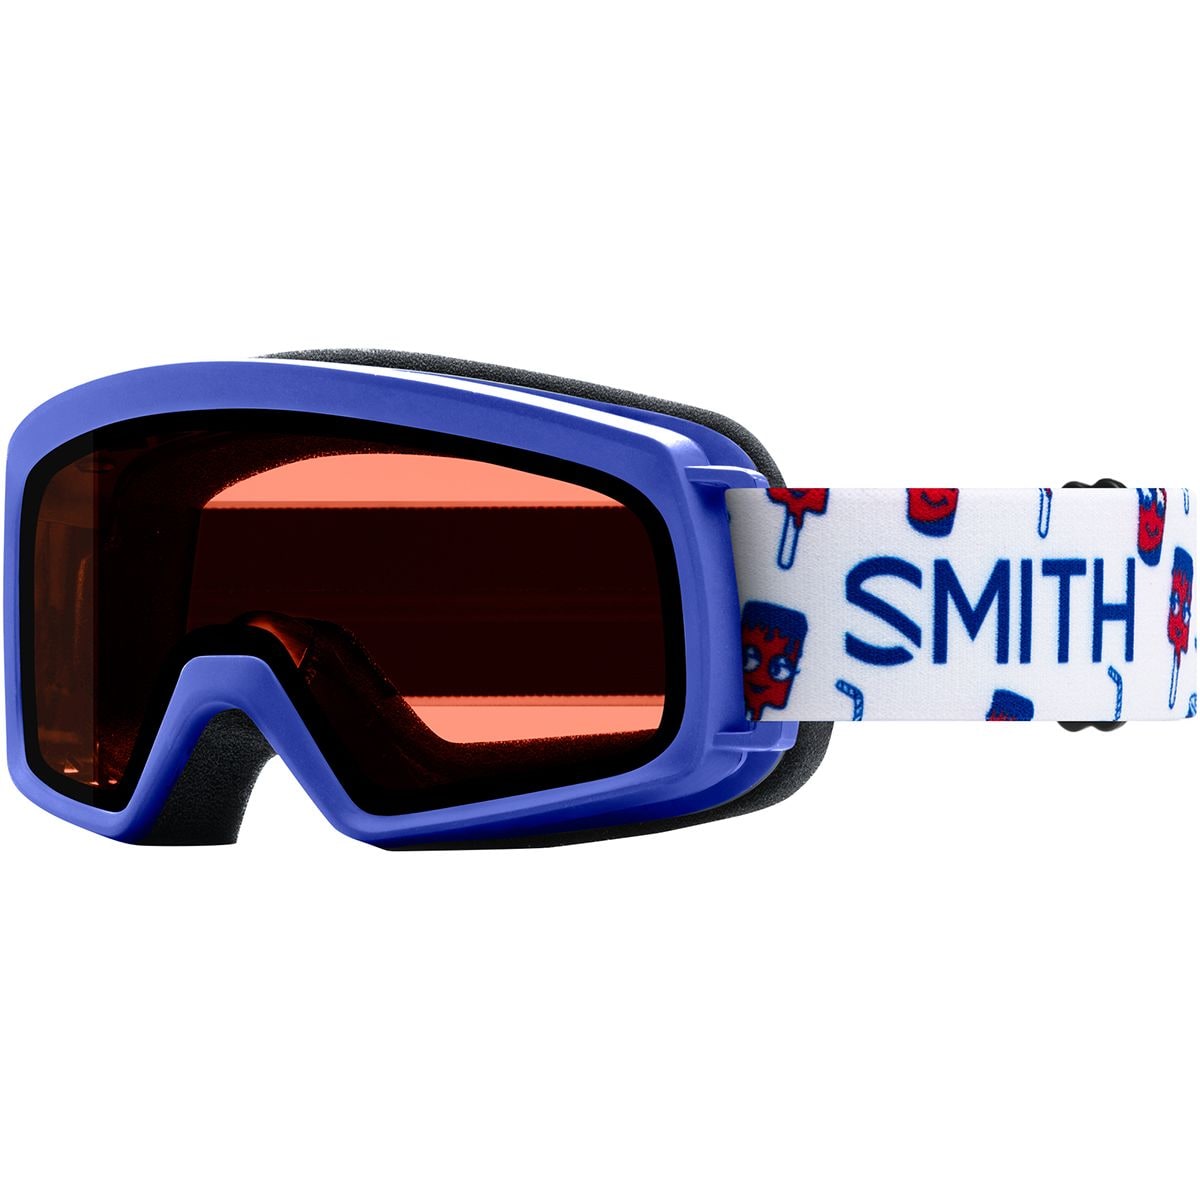 Smith Rascal Goggles - Kids' Blue Showtime/Rc36/No Extra Lens